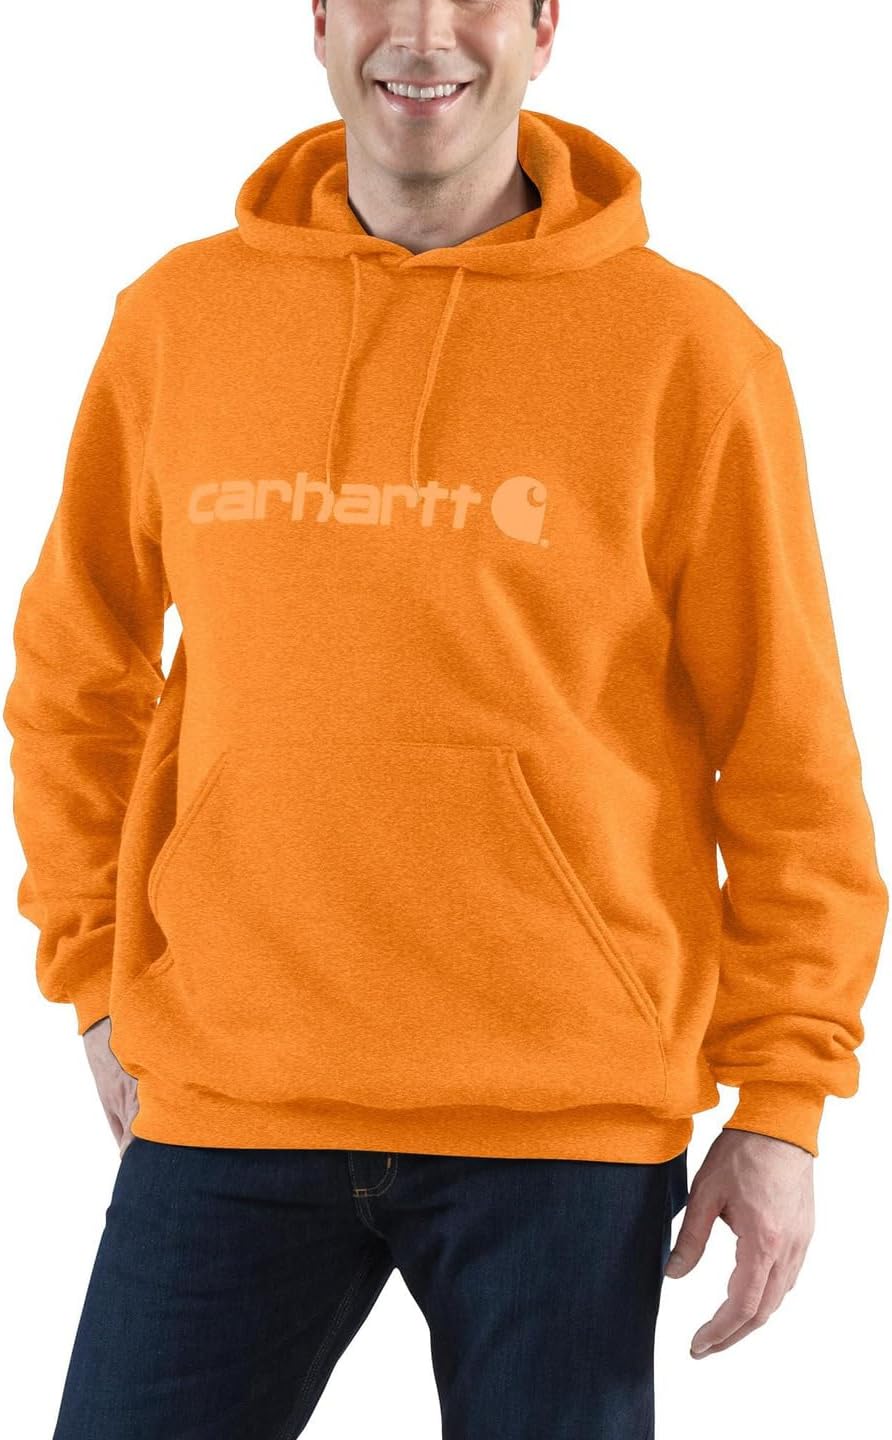 Толстовка средней плотности с фирменным логотипом Carhartt, цвет Marmalade Heather футболка с фирменным логотипом s s carhartt цвет marmalade heather